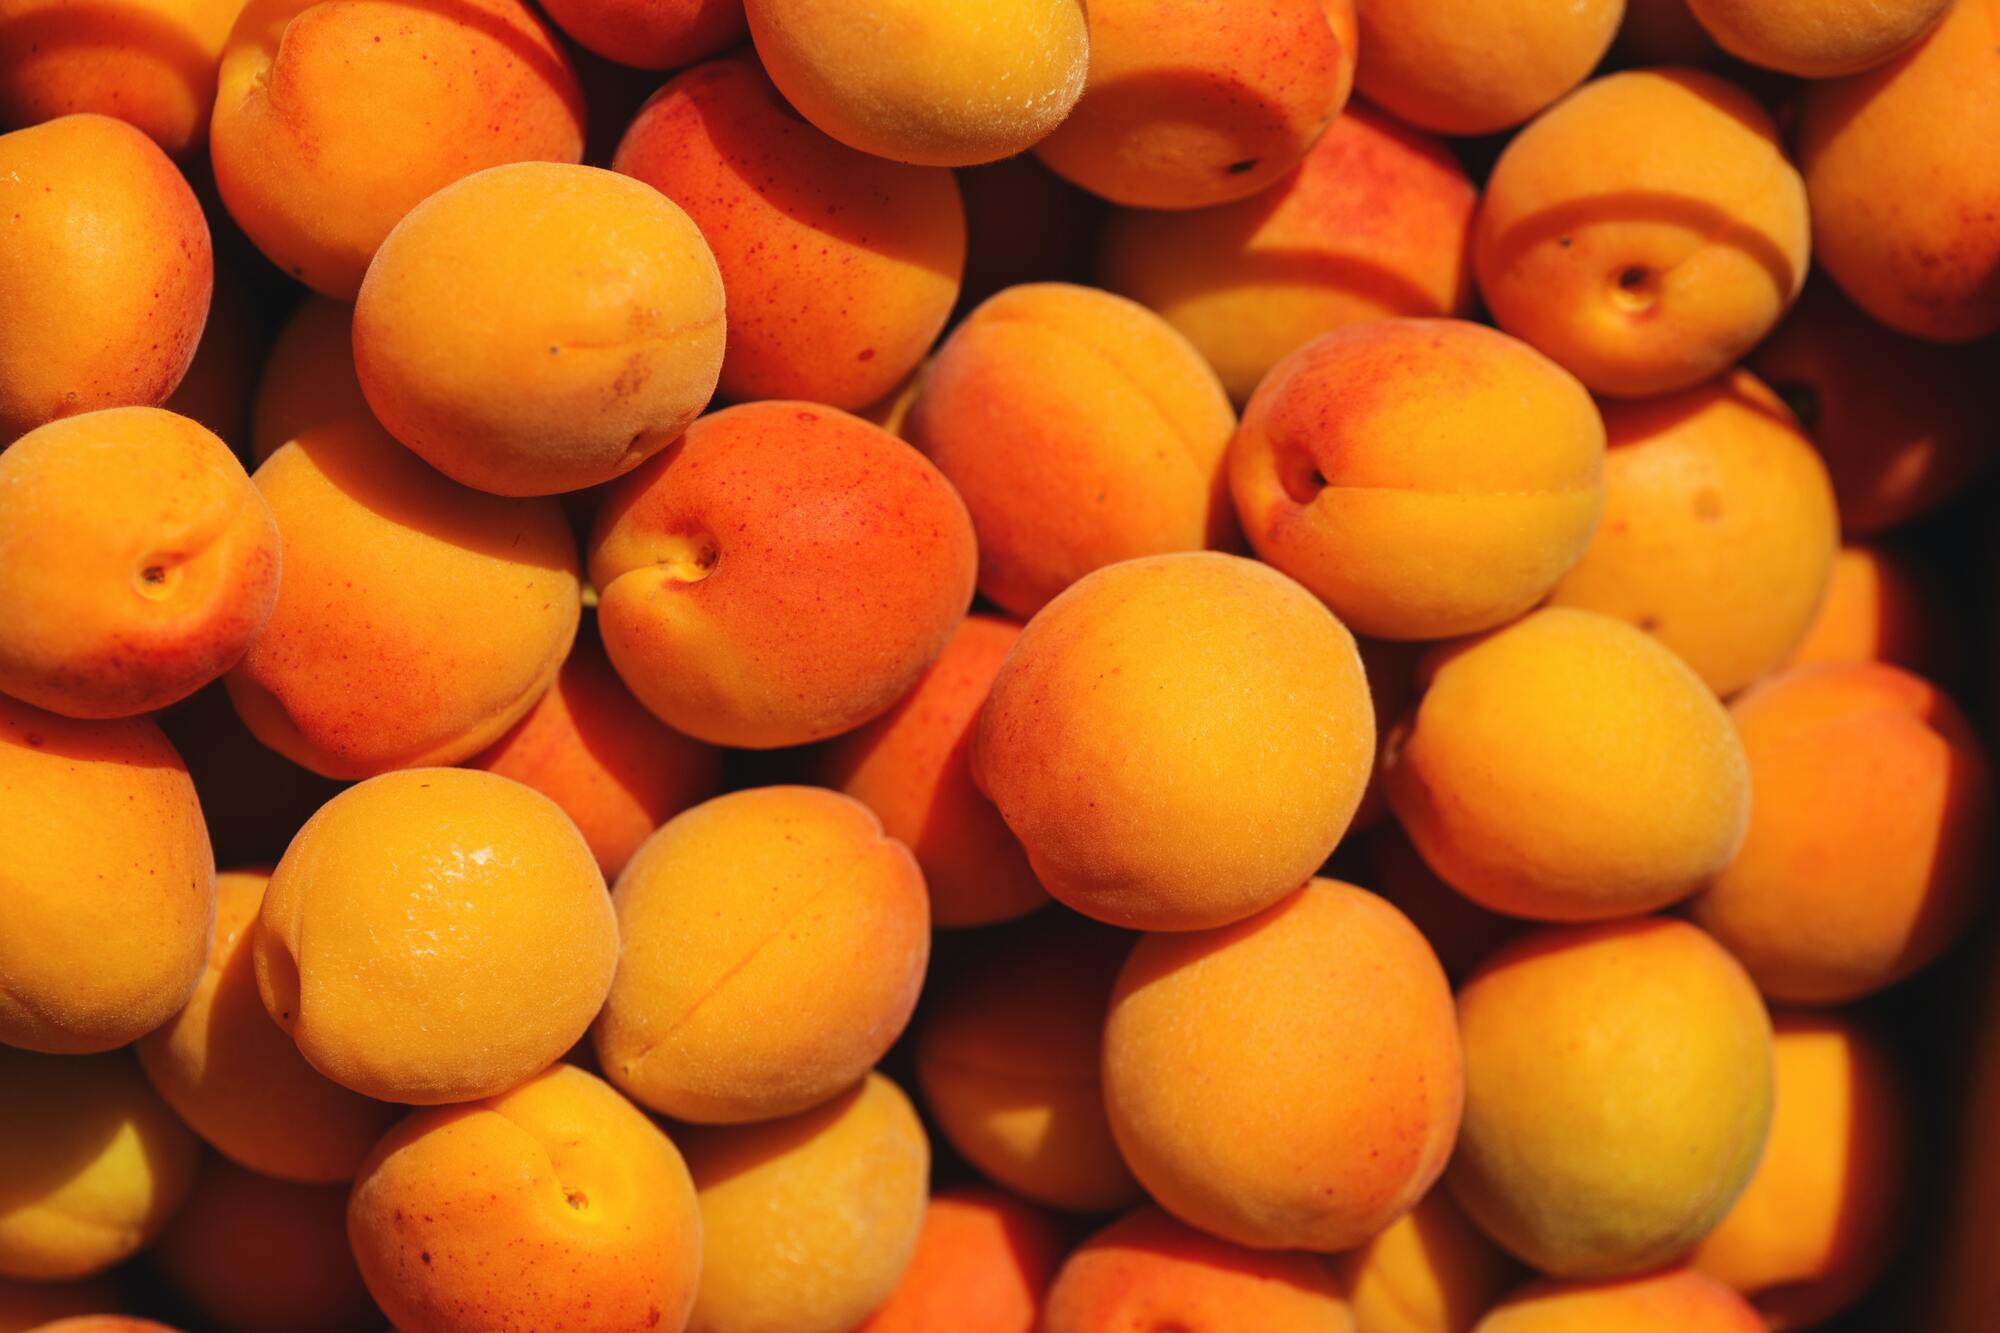 Ripe apricots